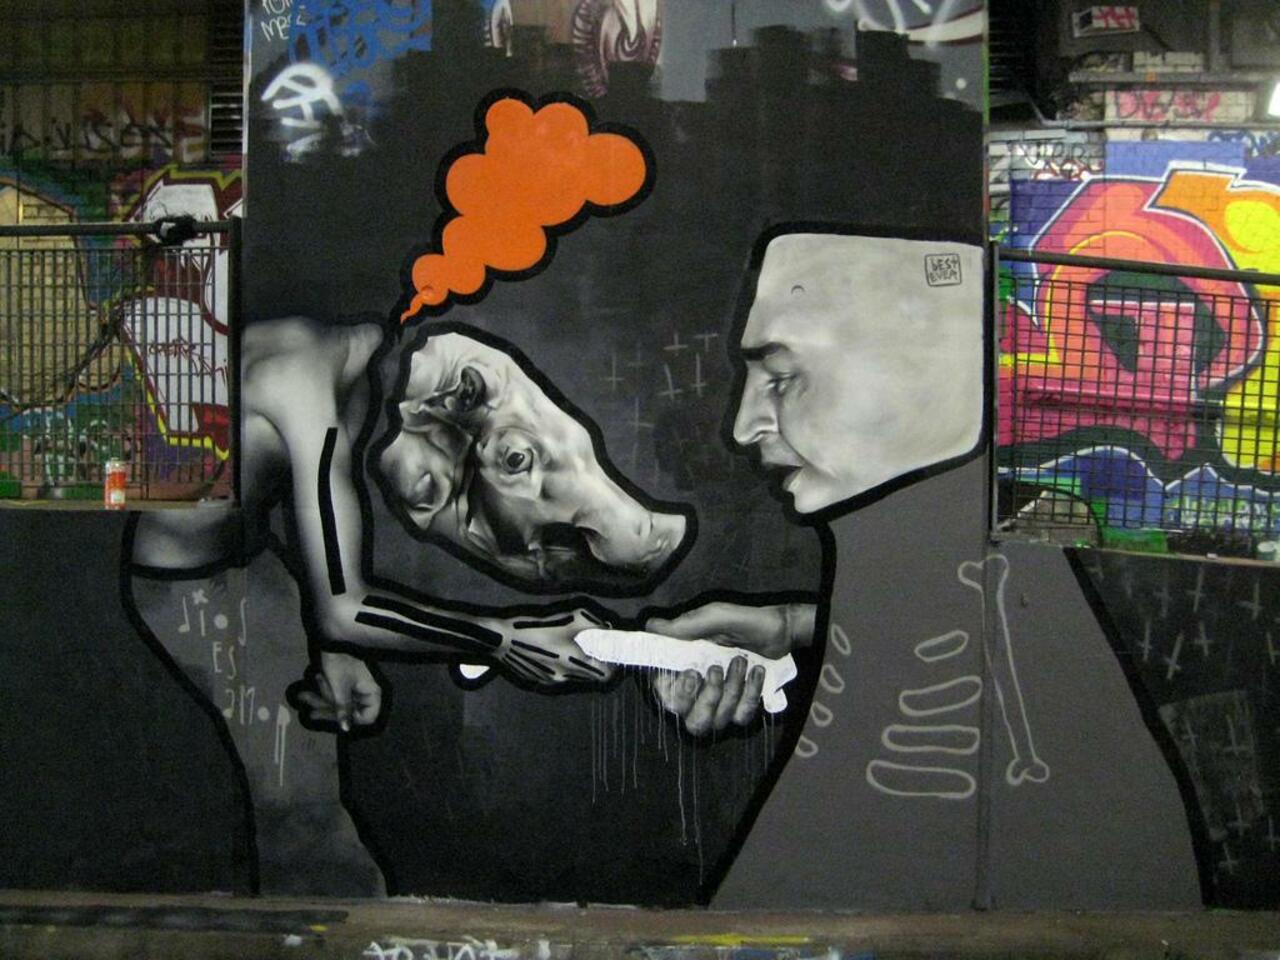 “@hypatia373: #art #streetart #graffiti http://t.co/RQ3TobaogU”